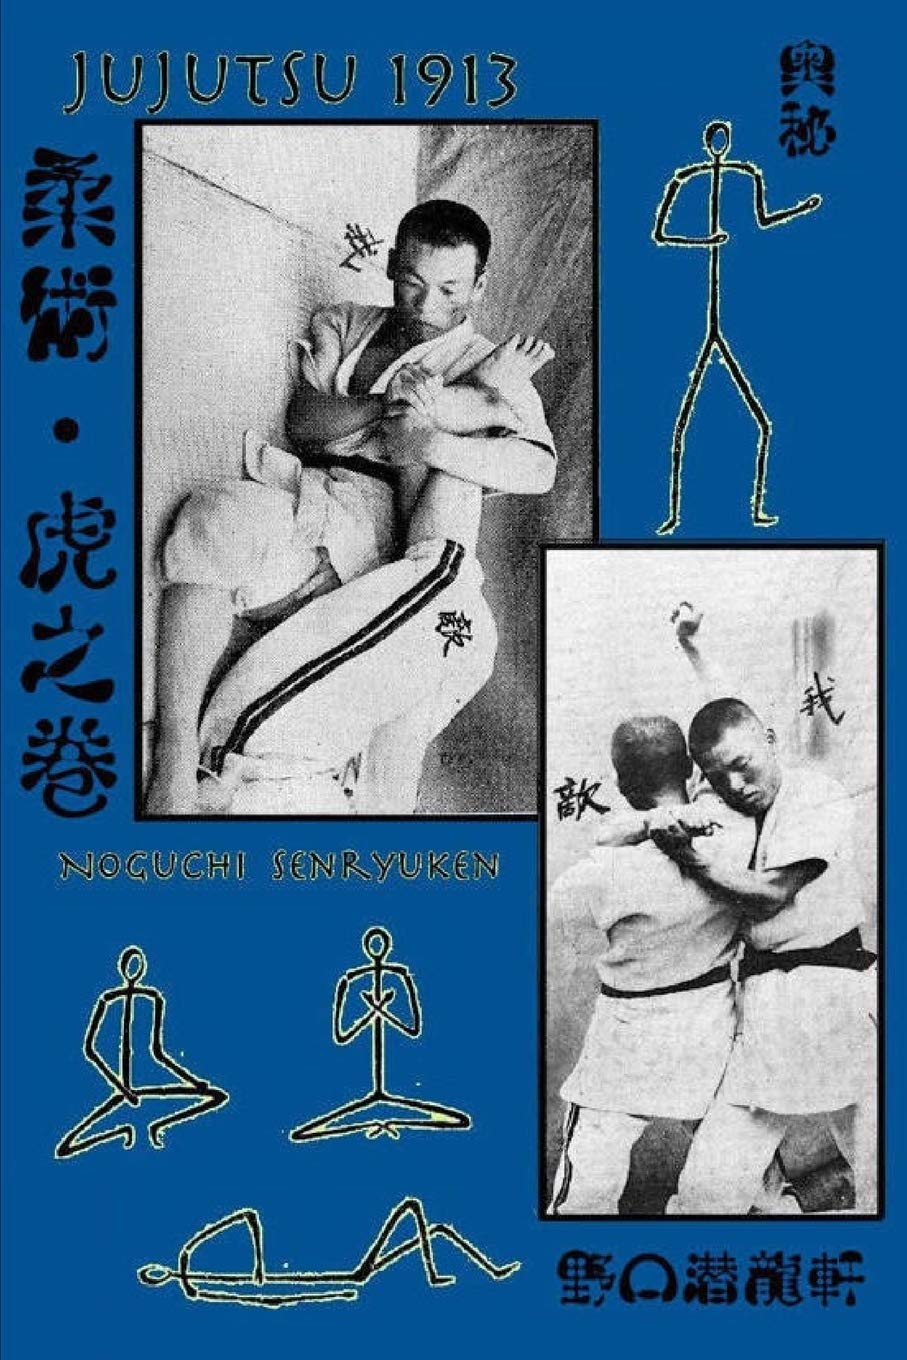 Jujutsu 1913 Book by Noguchi Senryuken